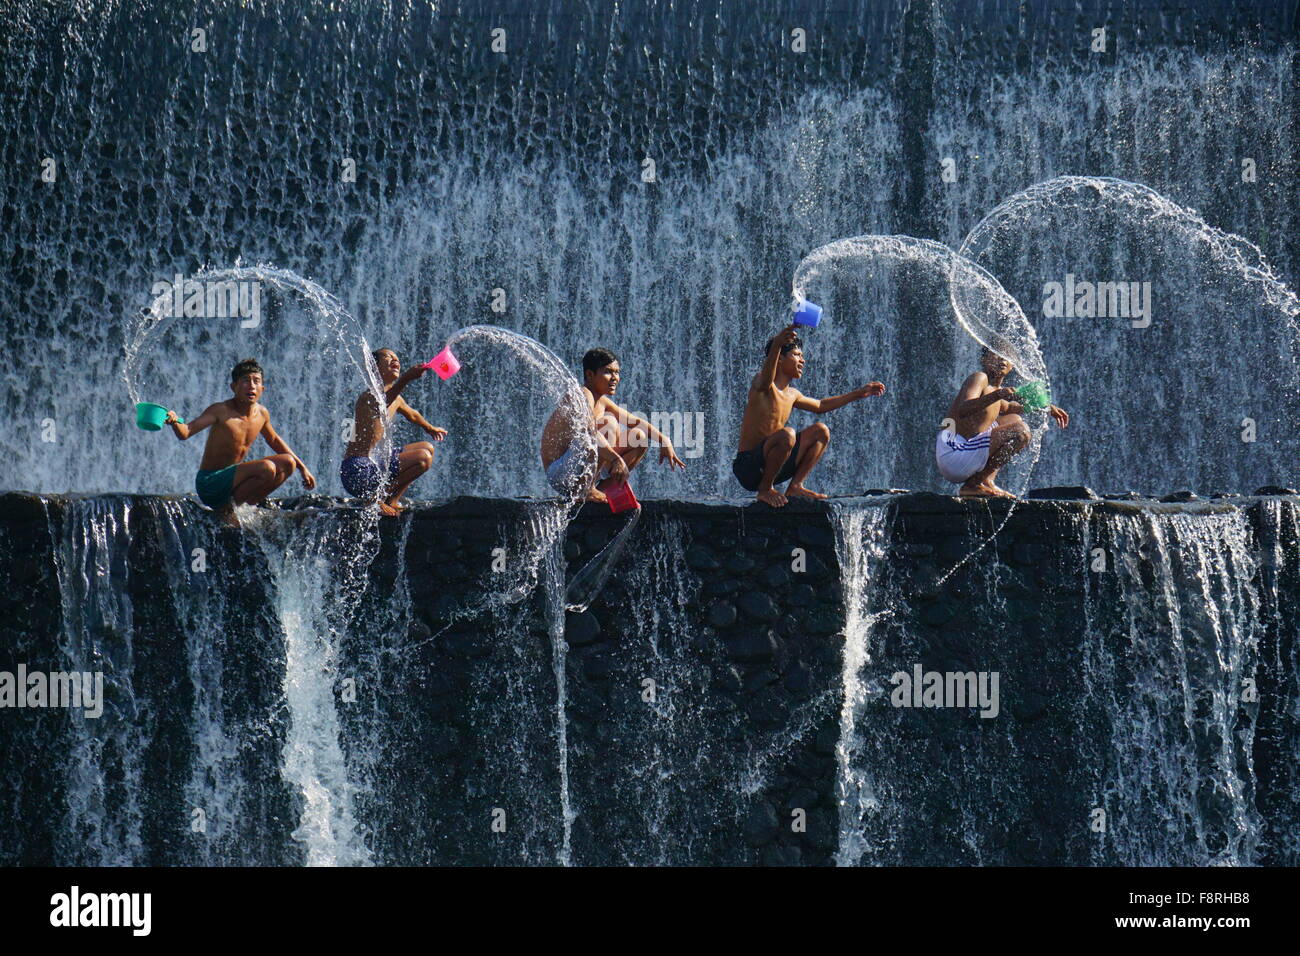 Five children splashing water, Tukad Unda Dam, Bali, Indonesia Stock Photo